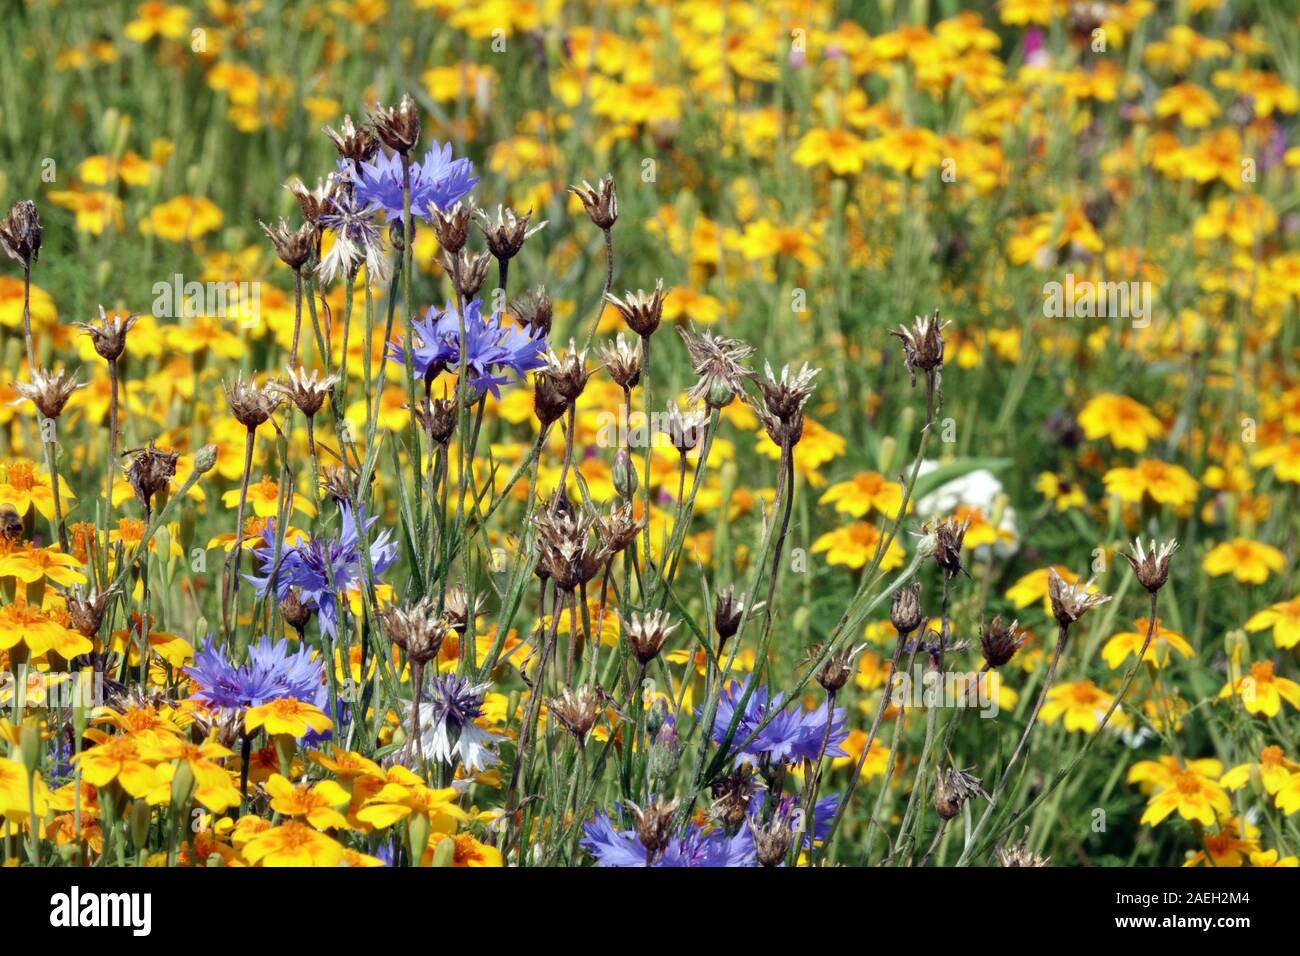 Prairie fleurie fleurs bleues jaunes jardin Centaurea cyanus 'Blue Boy' Tagetes fleurs de prairie jardin Marigolds Centaurea Marigold Bachelors boutons Banque D'Images